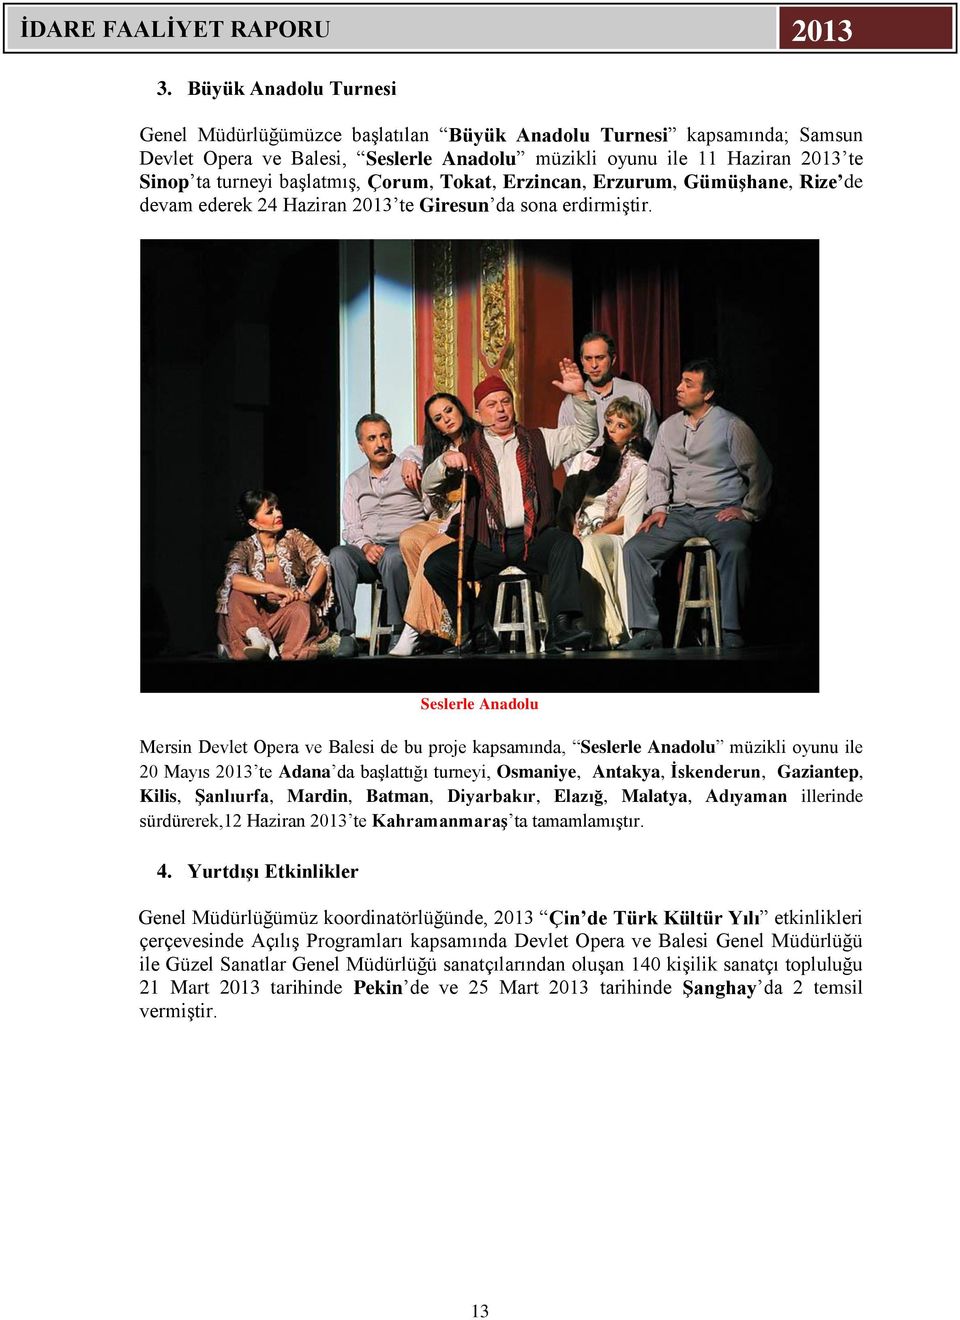 Seslerle Anadolu Mersin Devlet Opera ve Balesi de bu proje kapsamında, Seslerle Anadolu müzikli oyunu ile 20 Mayıs 2013 te Adana da başlattığı turneyi, Osmaniye, Antakya, İskenderun, Gaziantep,